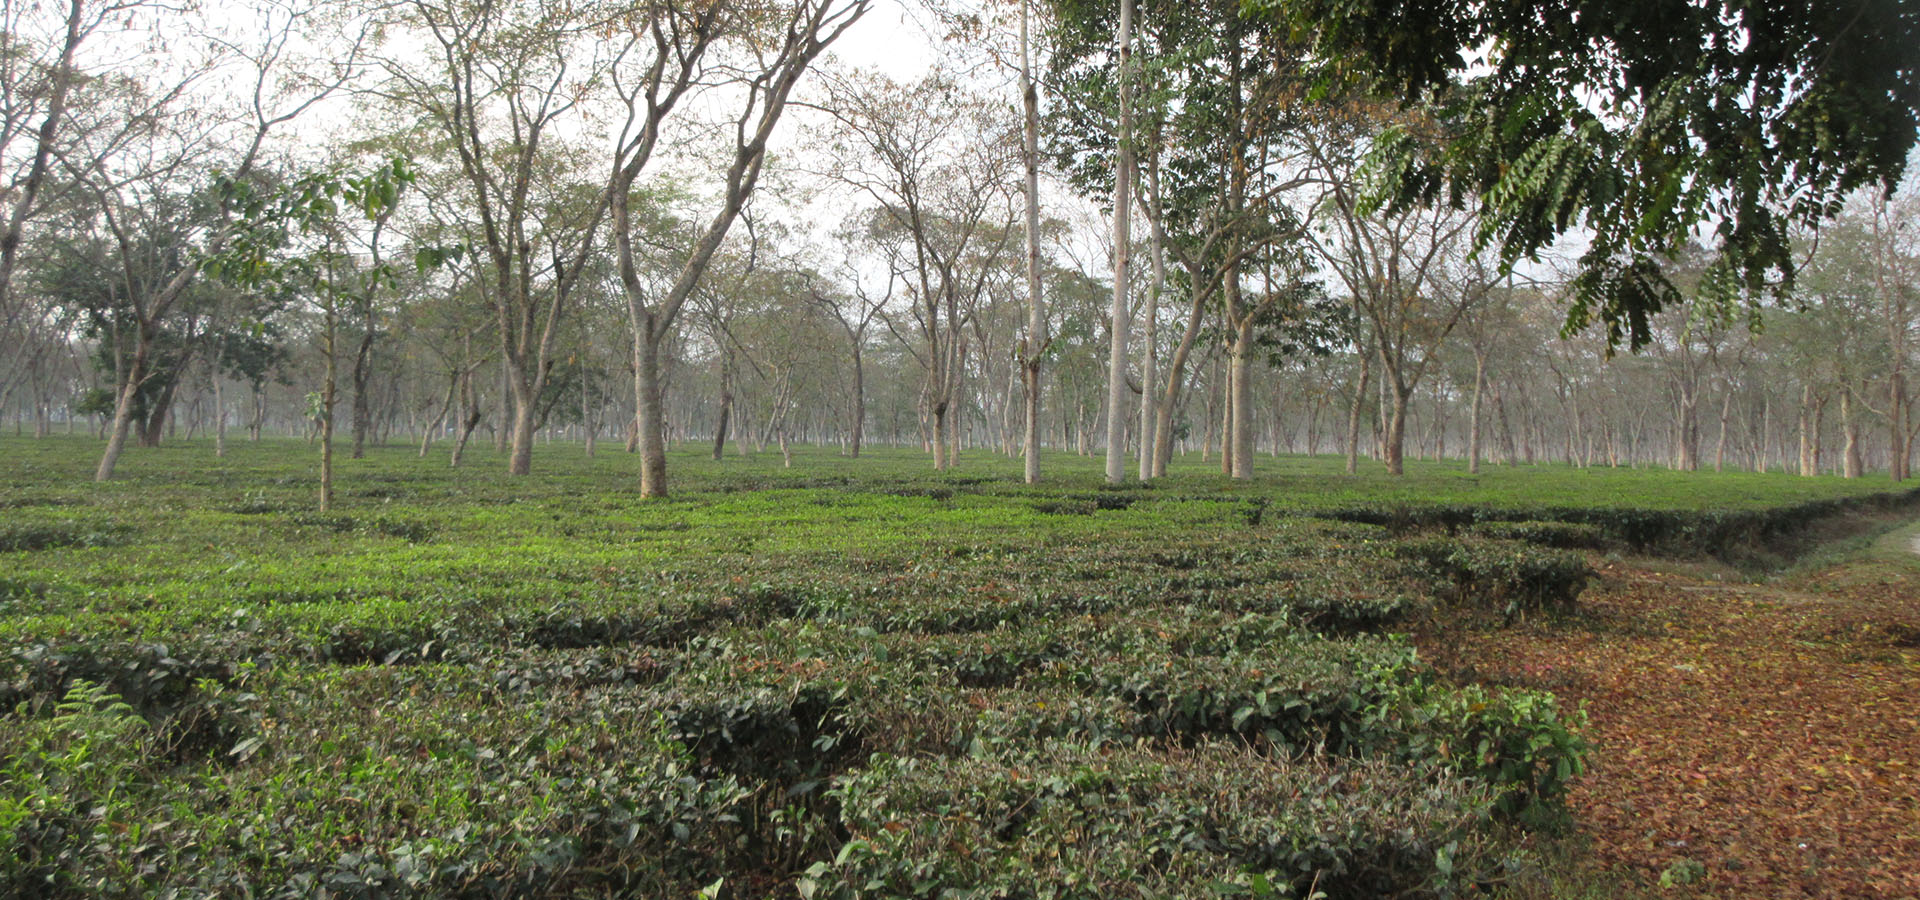 NEPAL – Portare un’istruzione di qualità ai figli dei lavoratori del tè